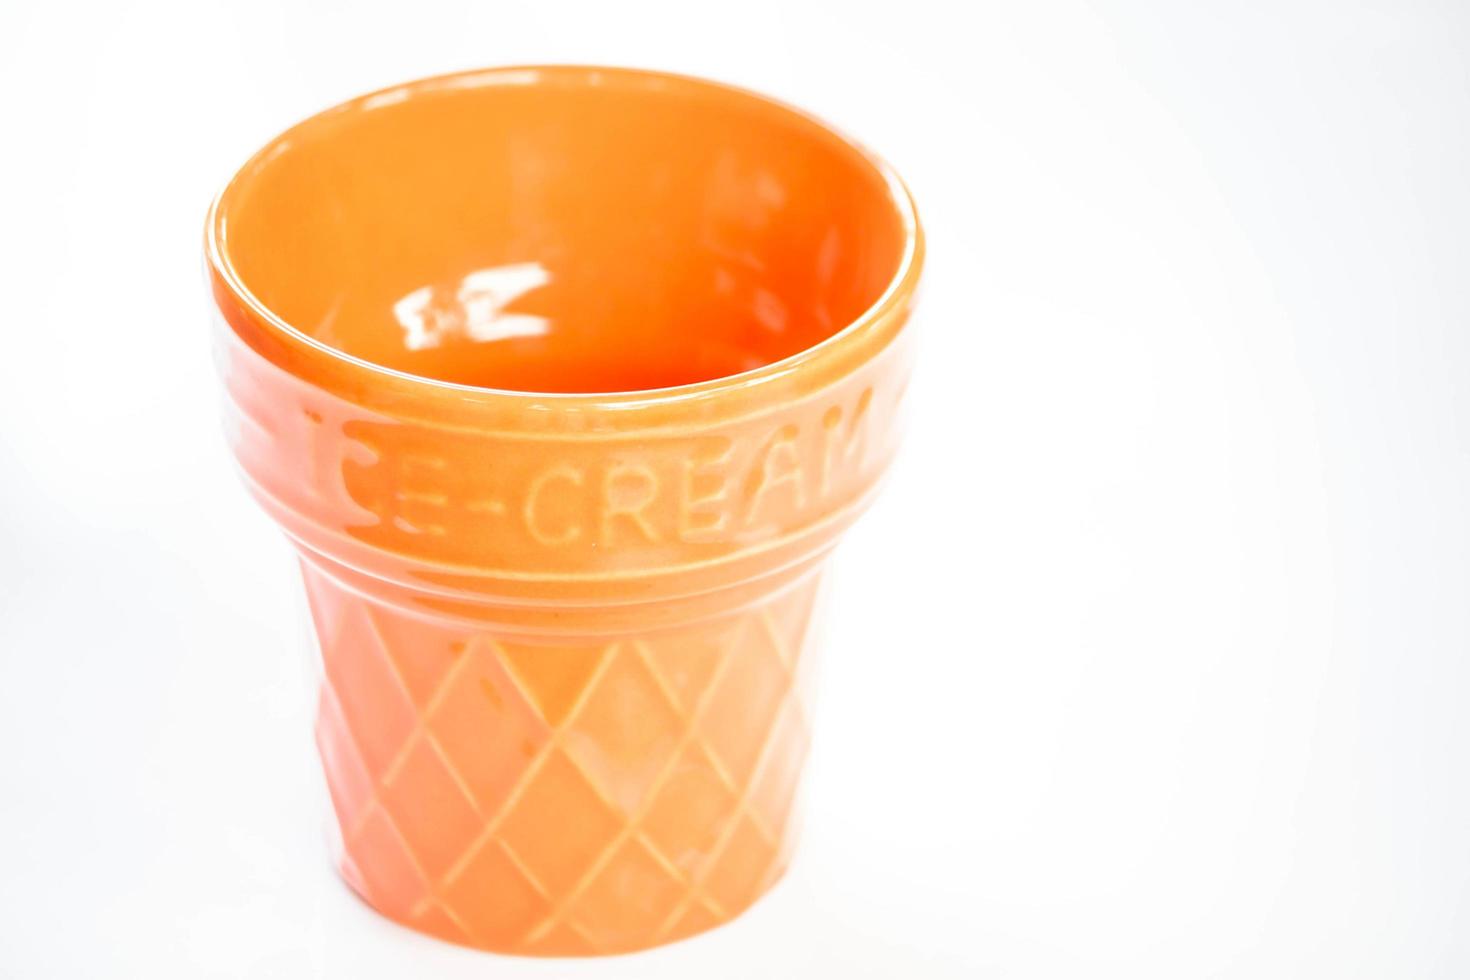 oranje ceramische kop op een witte achtergrond foto